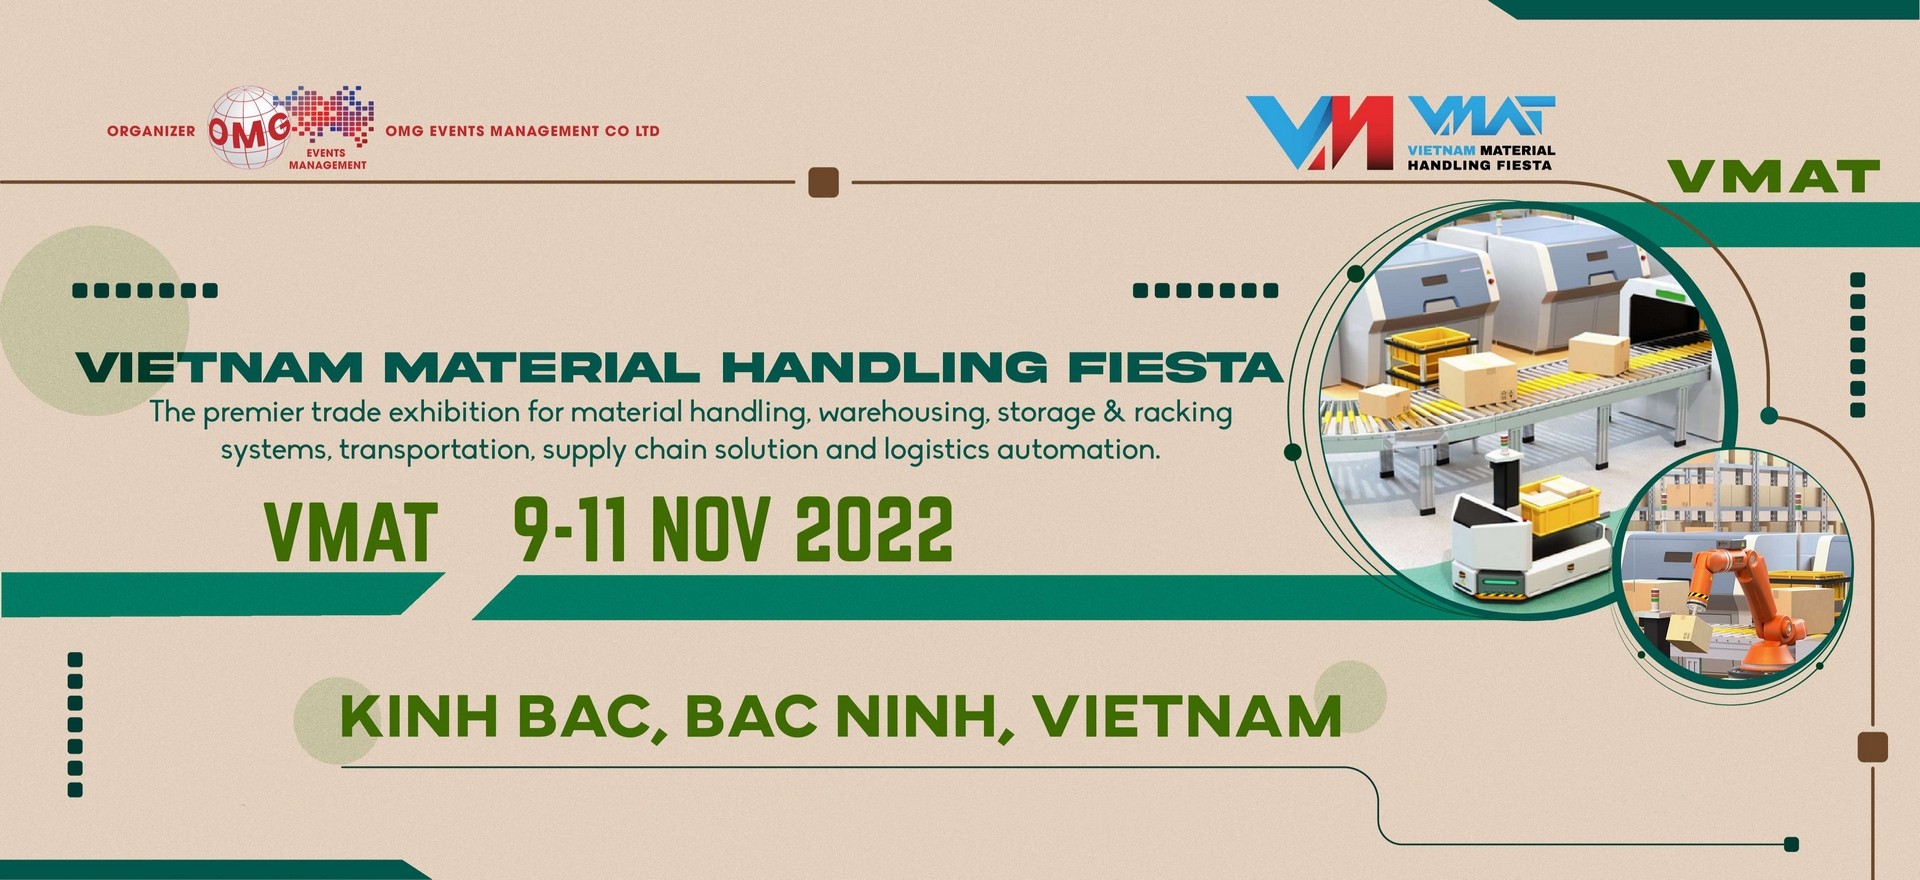 VMAT Bắc Ninh 2022 - Triển lãm Công nghiệp Quốc tế về Máy móc Thiết bị Nâng Hạ và Xử lý Hậu cần Việt Nam